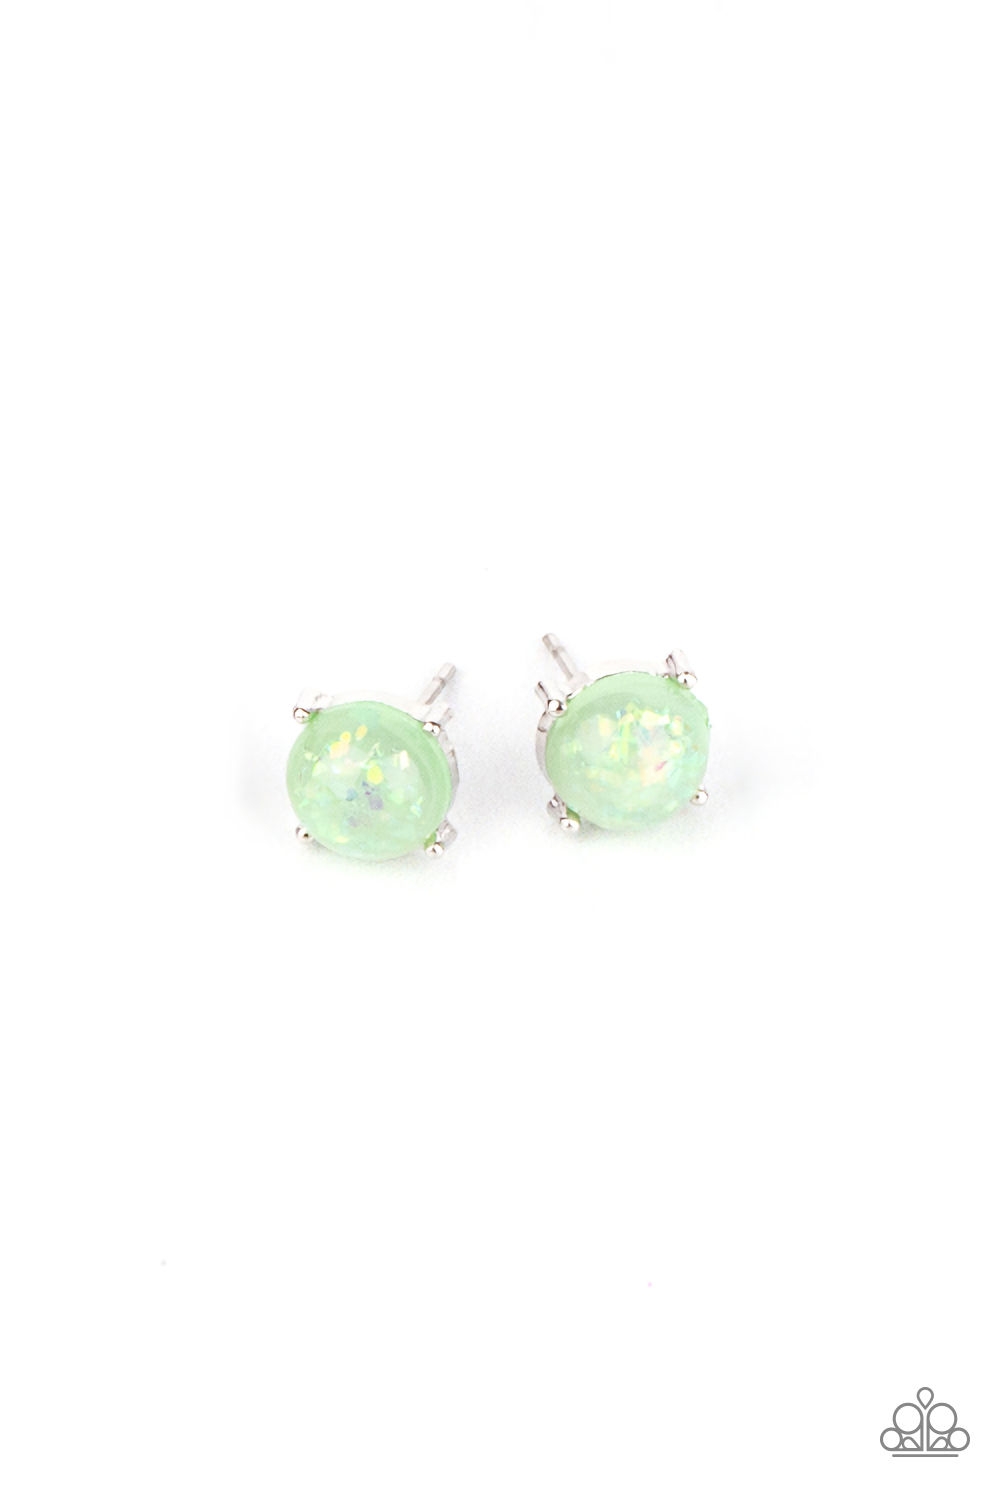 Earring - Starlet Shimmer Sparkle Bead Post - Green